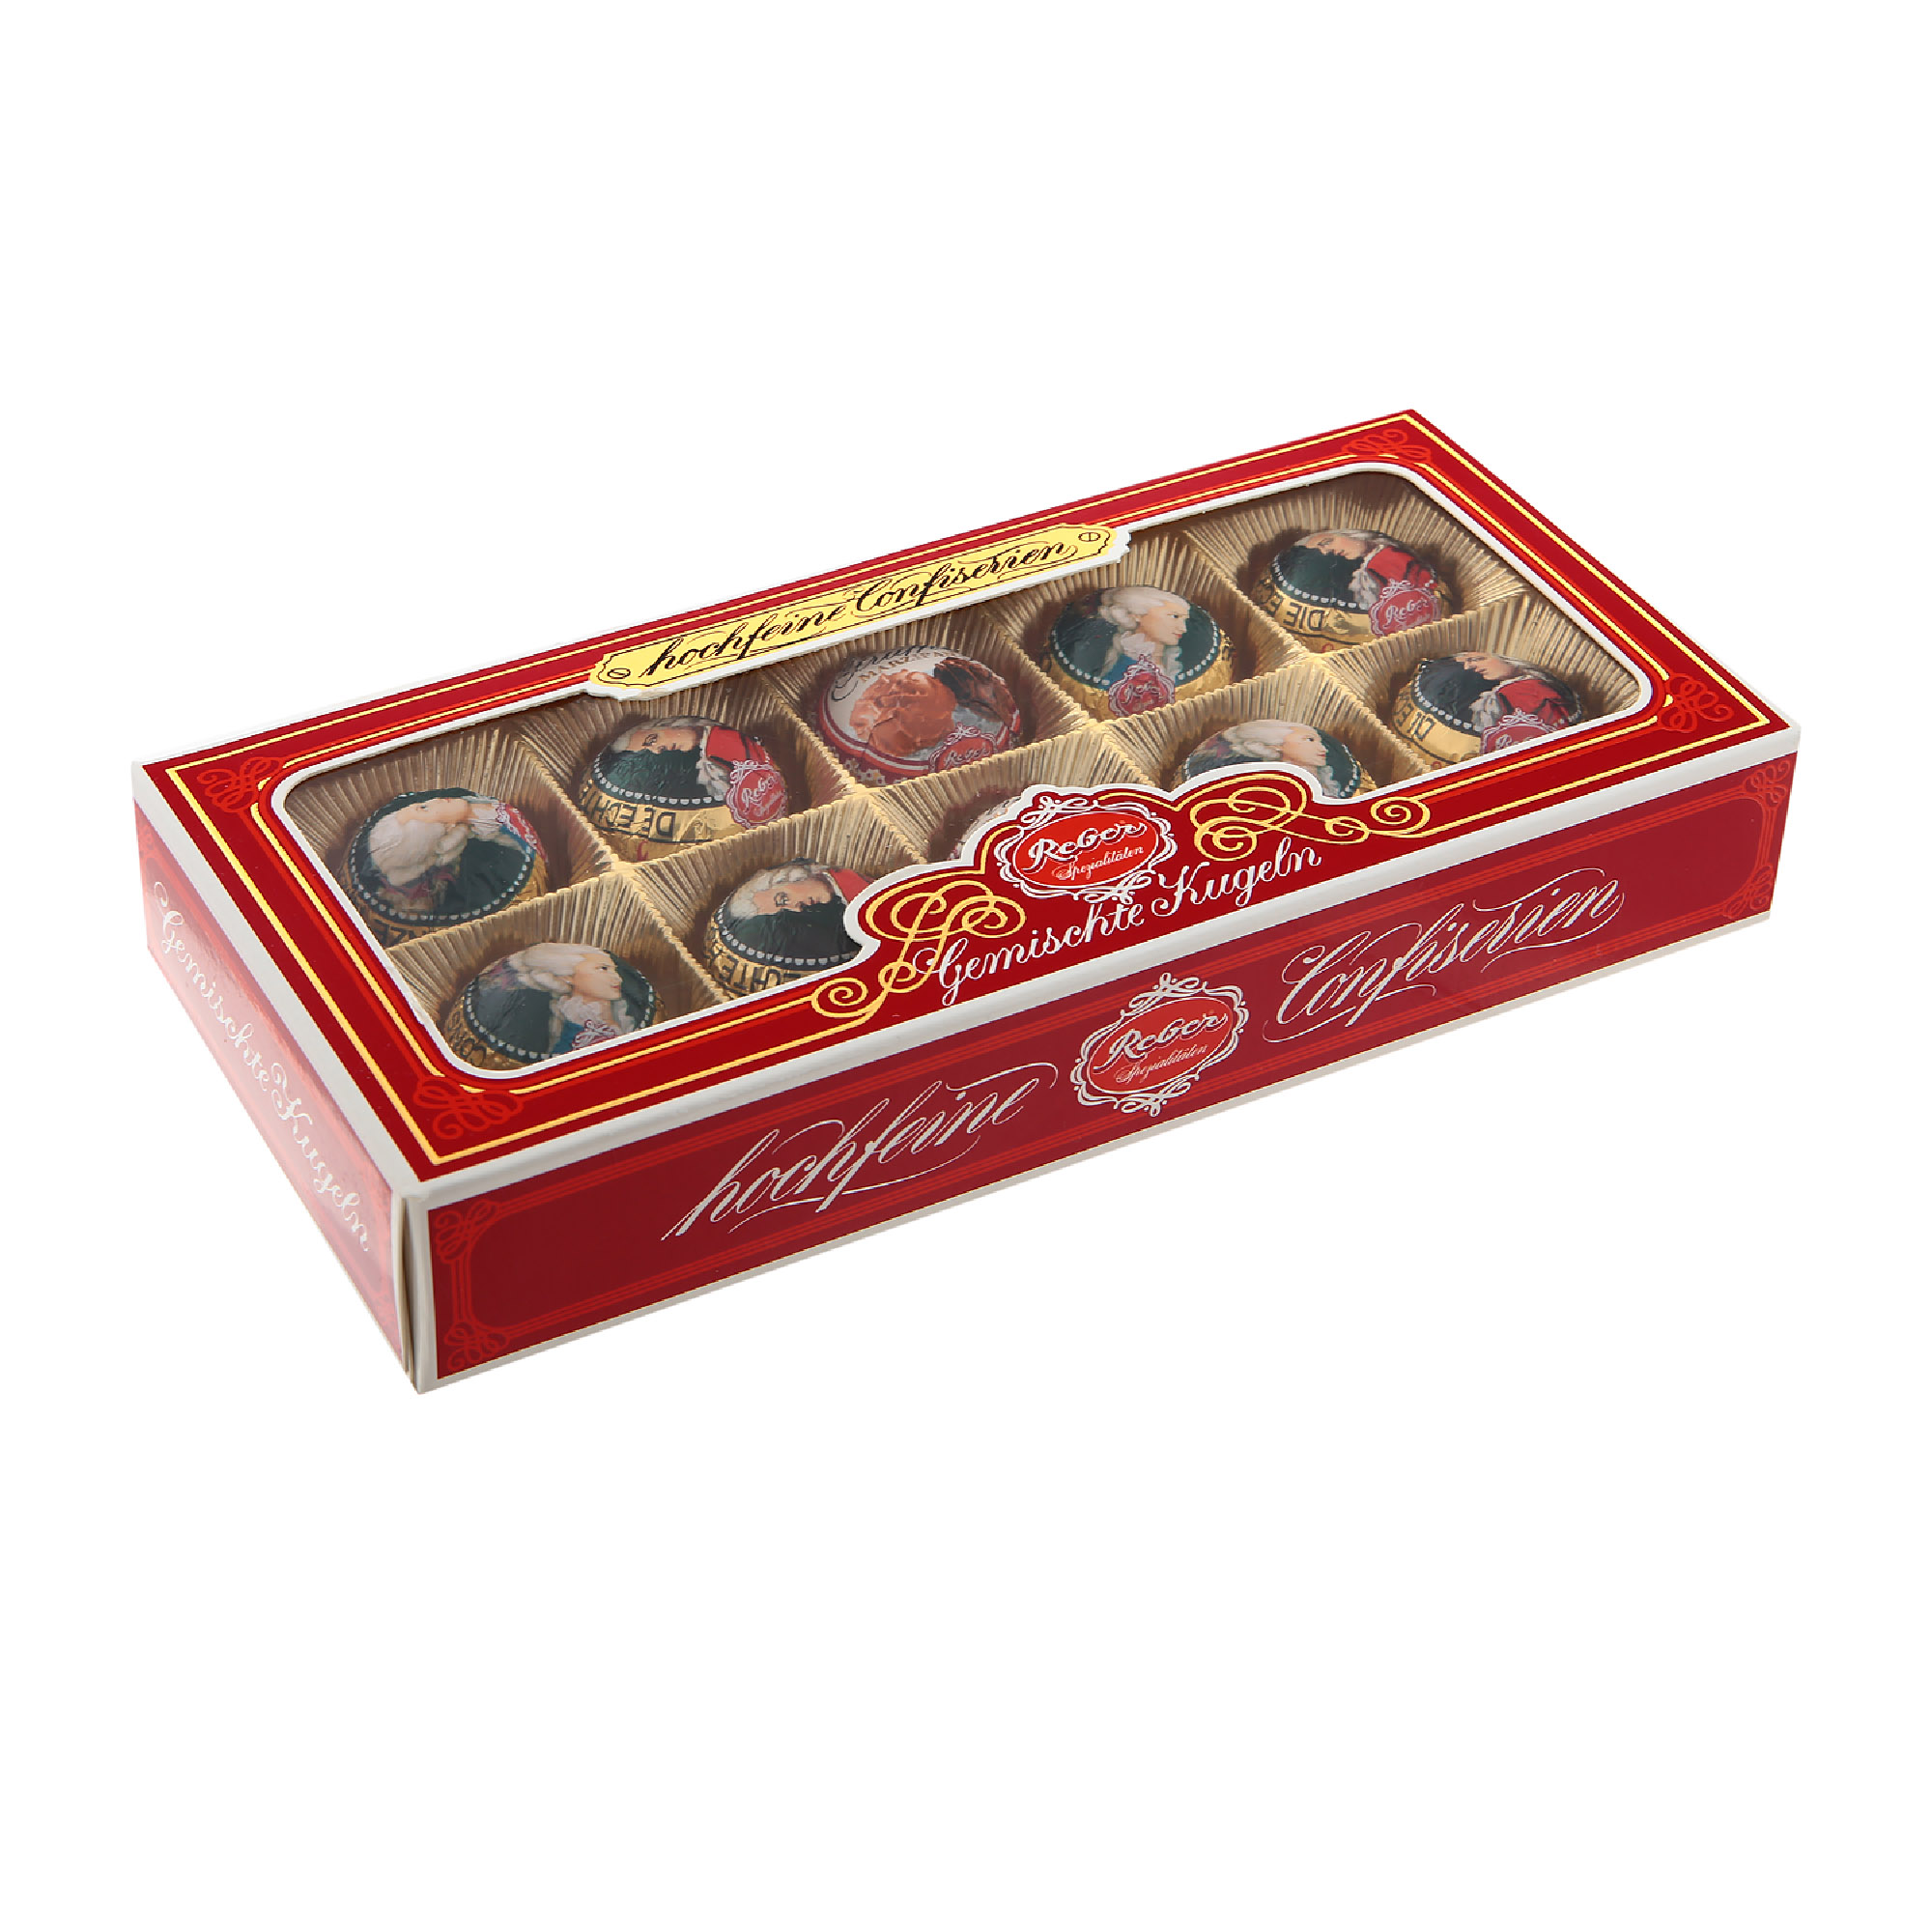 Набор конфет в новогодней упаковке Reber Моцарт 200 г набор конфет моцарт 830 850 г reber 1410105